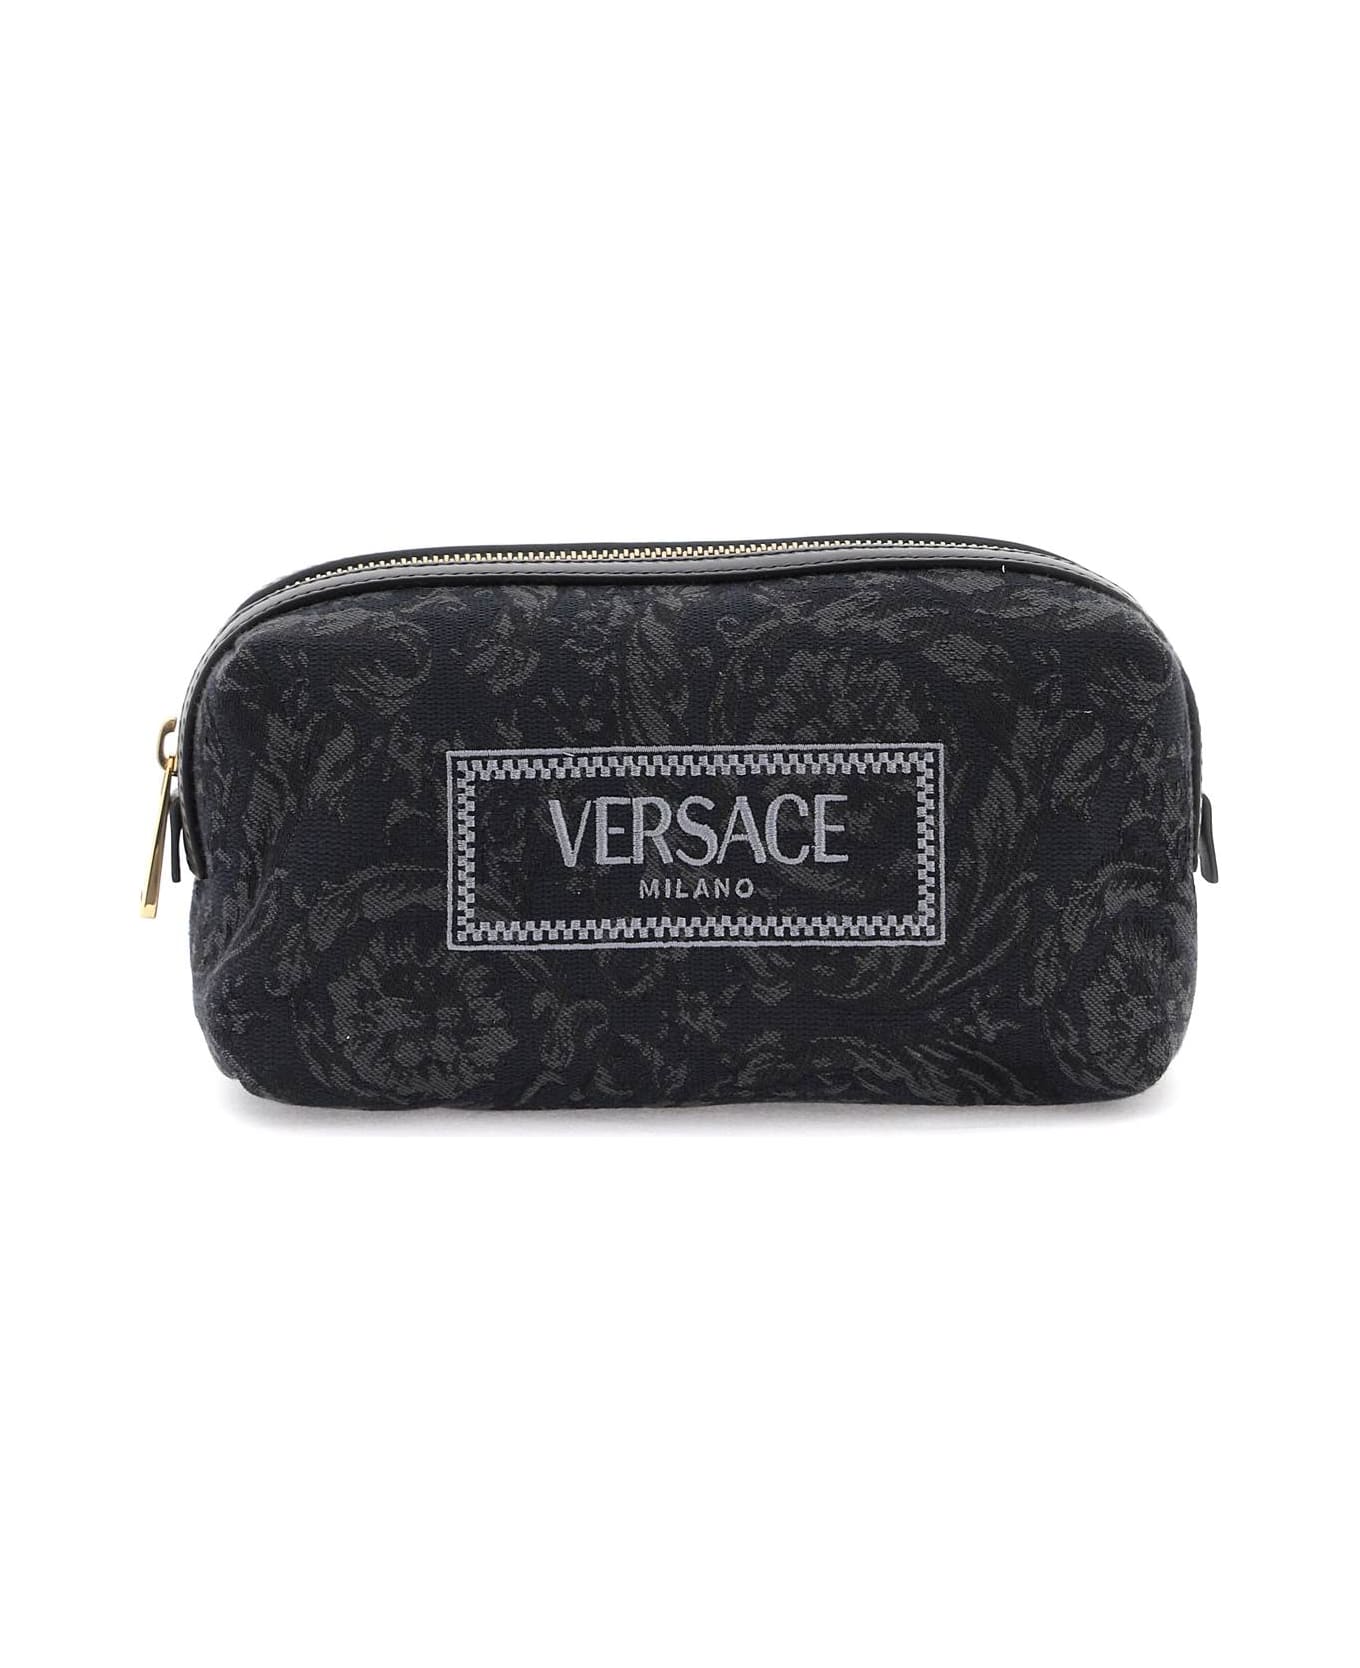 Versace Barocco Vanity Case - BLACK BLACK VERSACE GOLD (Black)